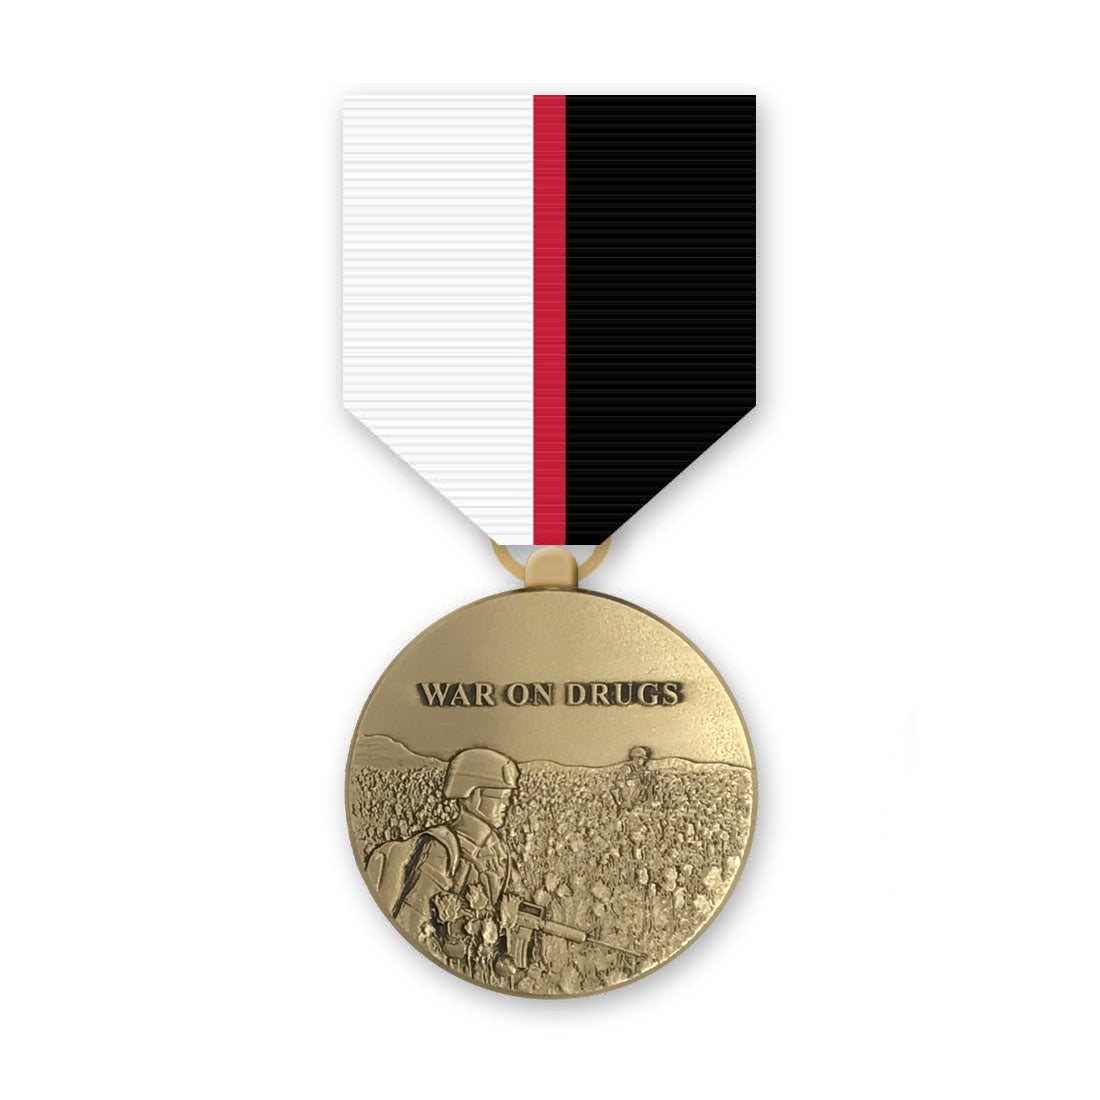 War on Drugs Service Medal